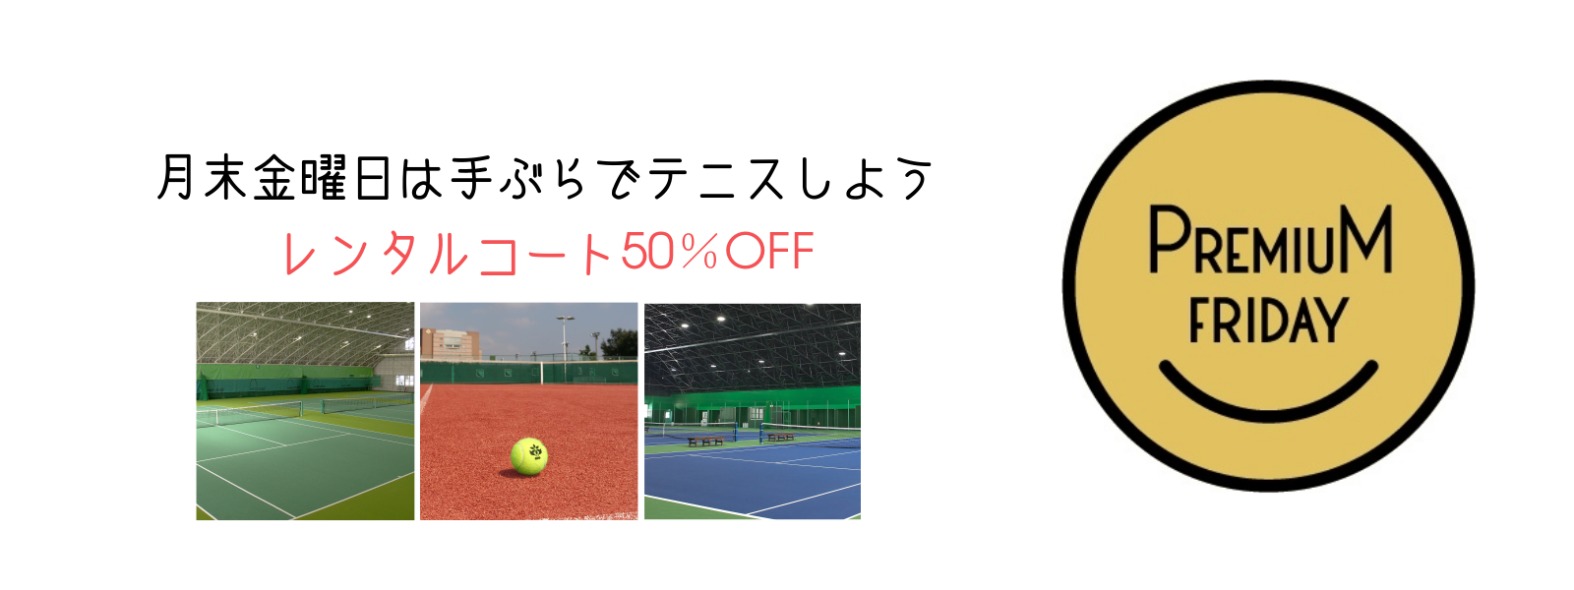 昭和の森テニスセンター 東京都昭島市 公式サイト